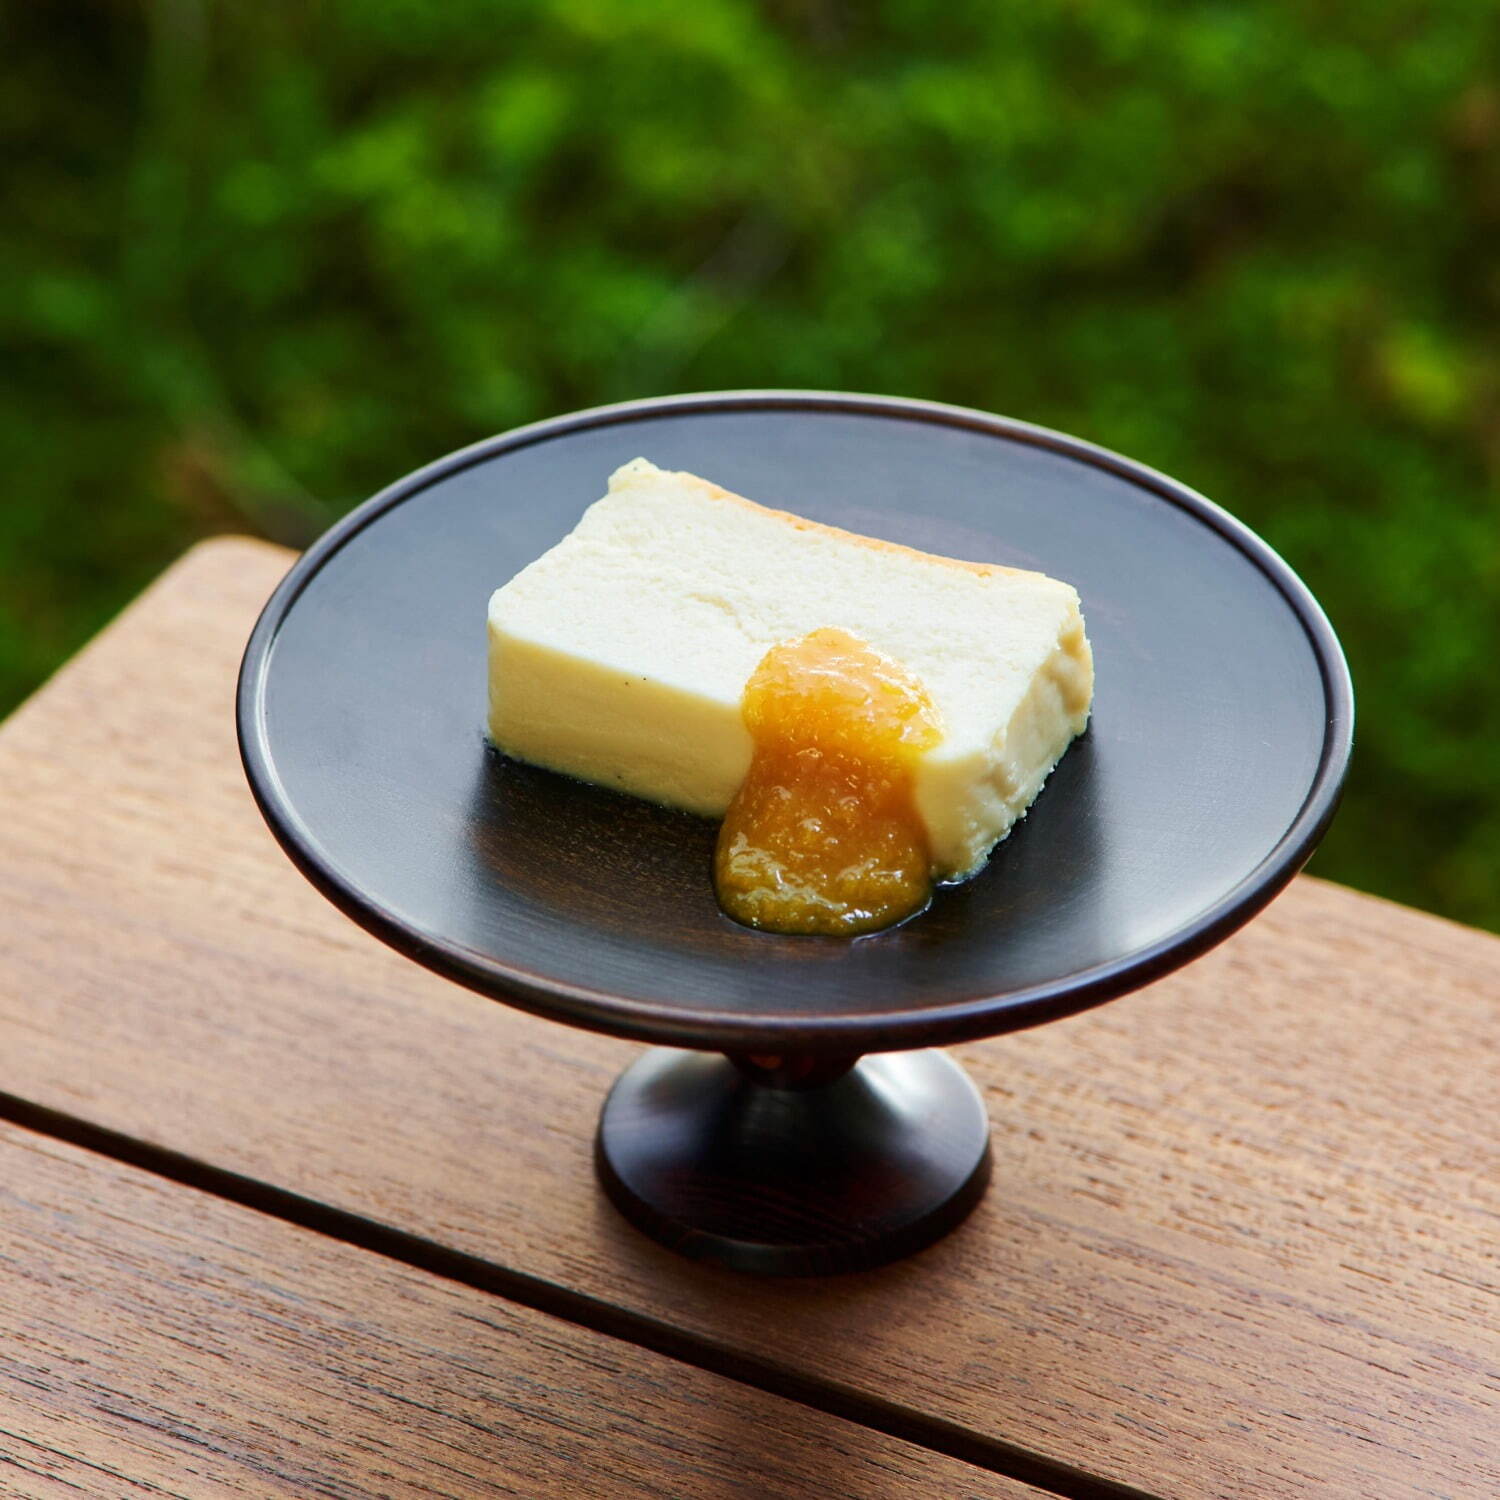 「チーズケーキ」550円
※提供時はペアリングジャムが添えられる。